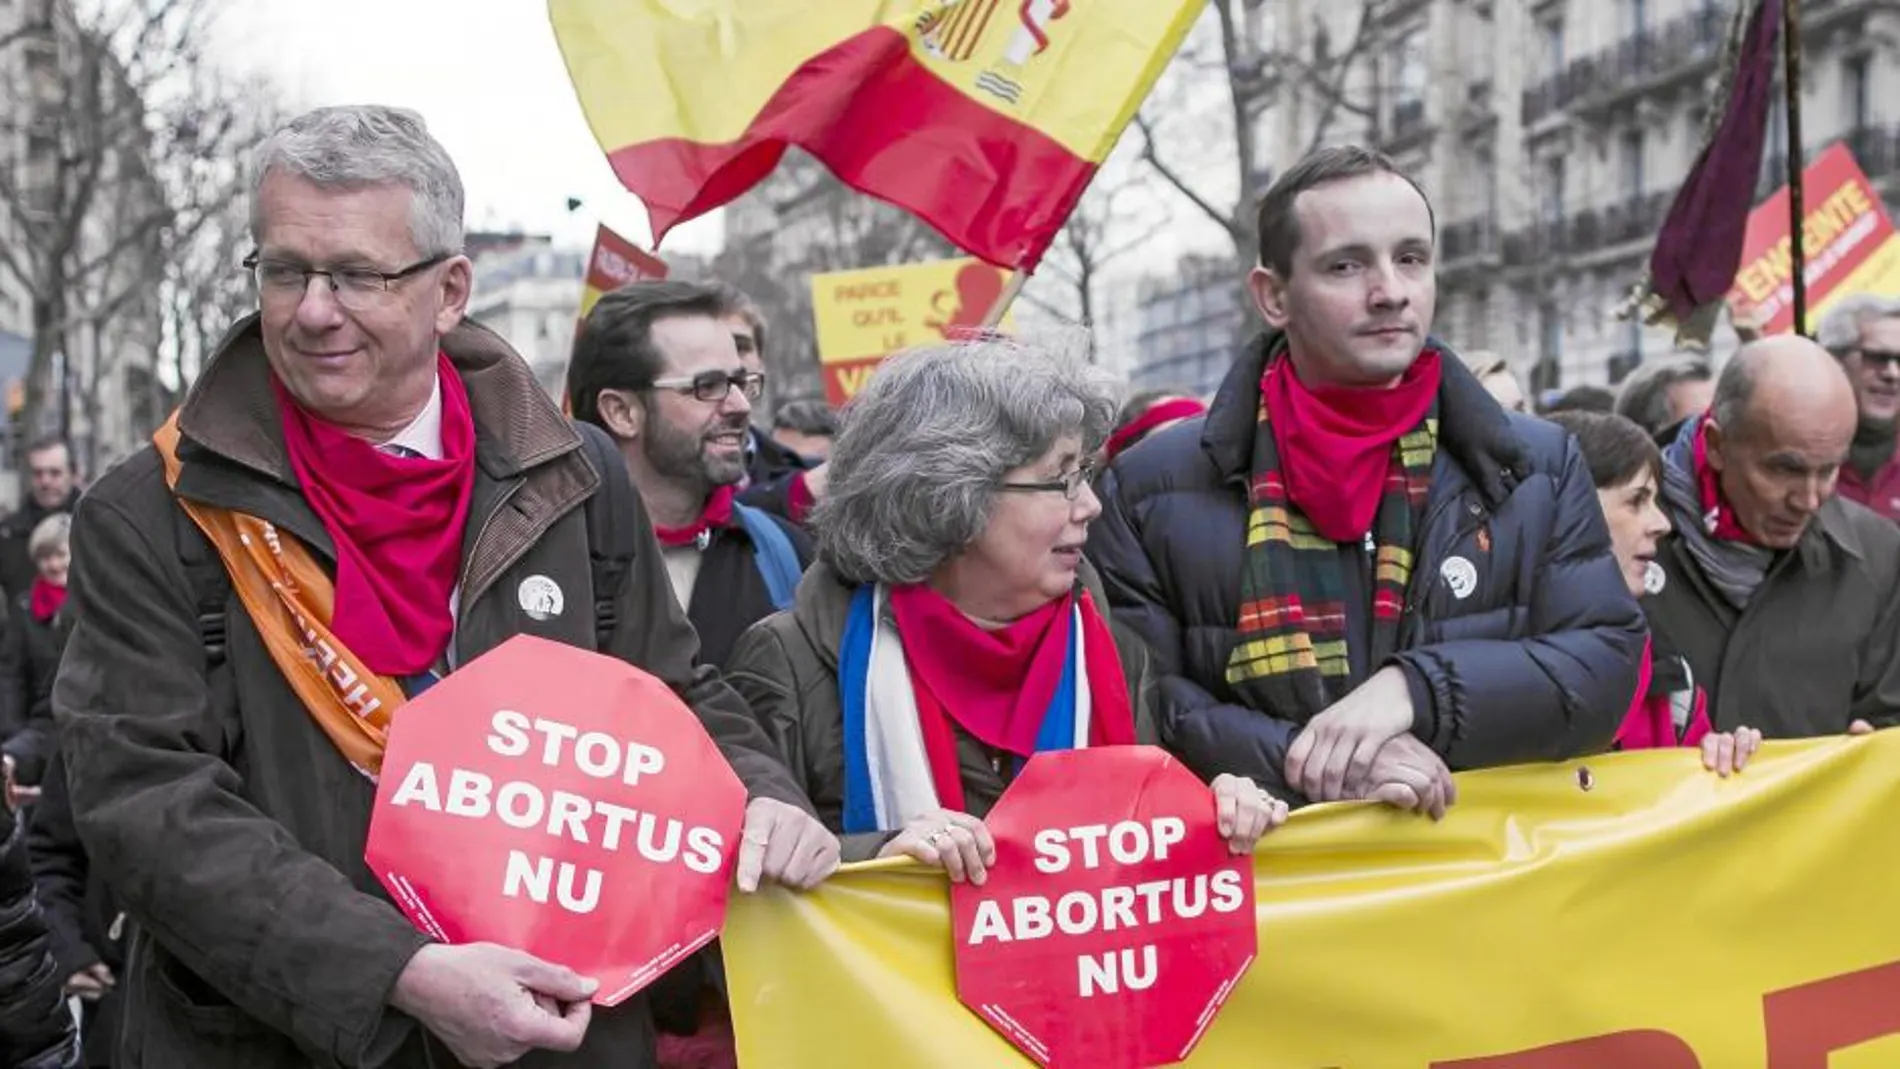 Los colores rojo y amarillo llenaron varias calles de París en apoyo a la ley de Gallardón